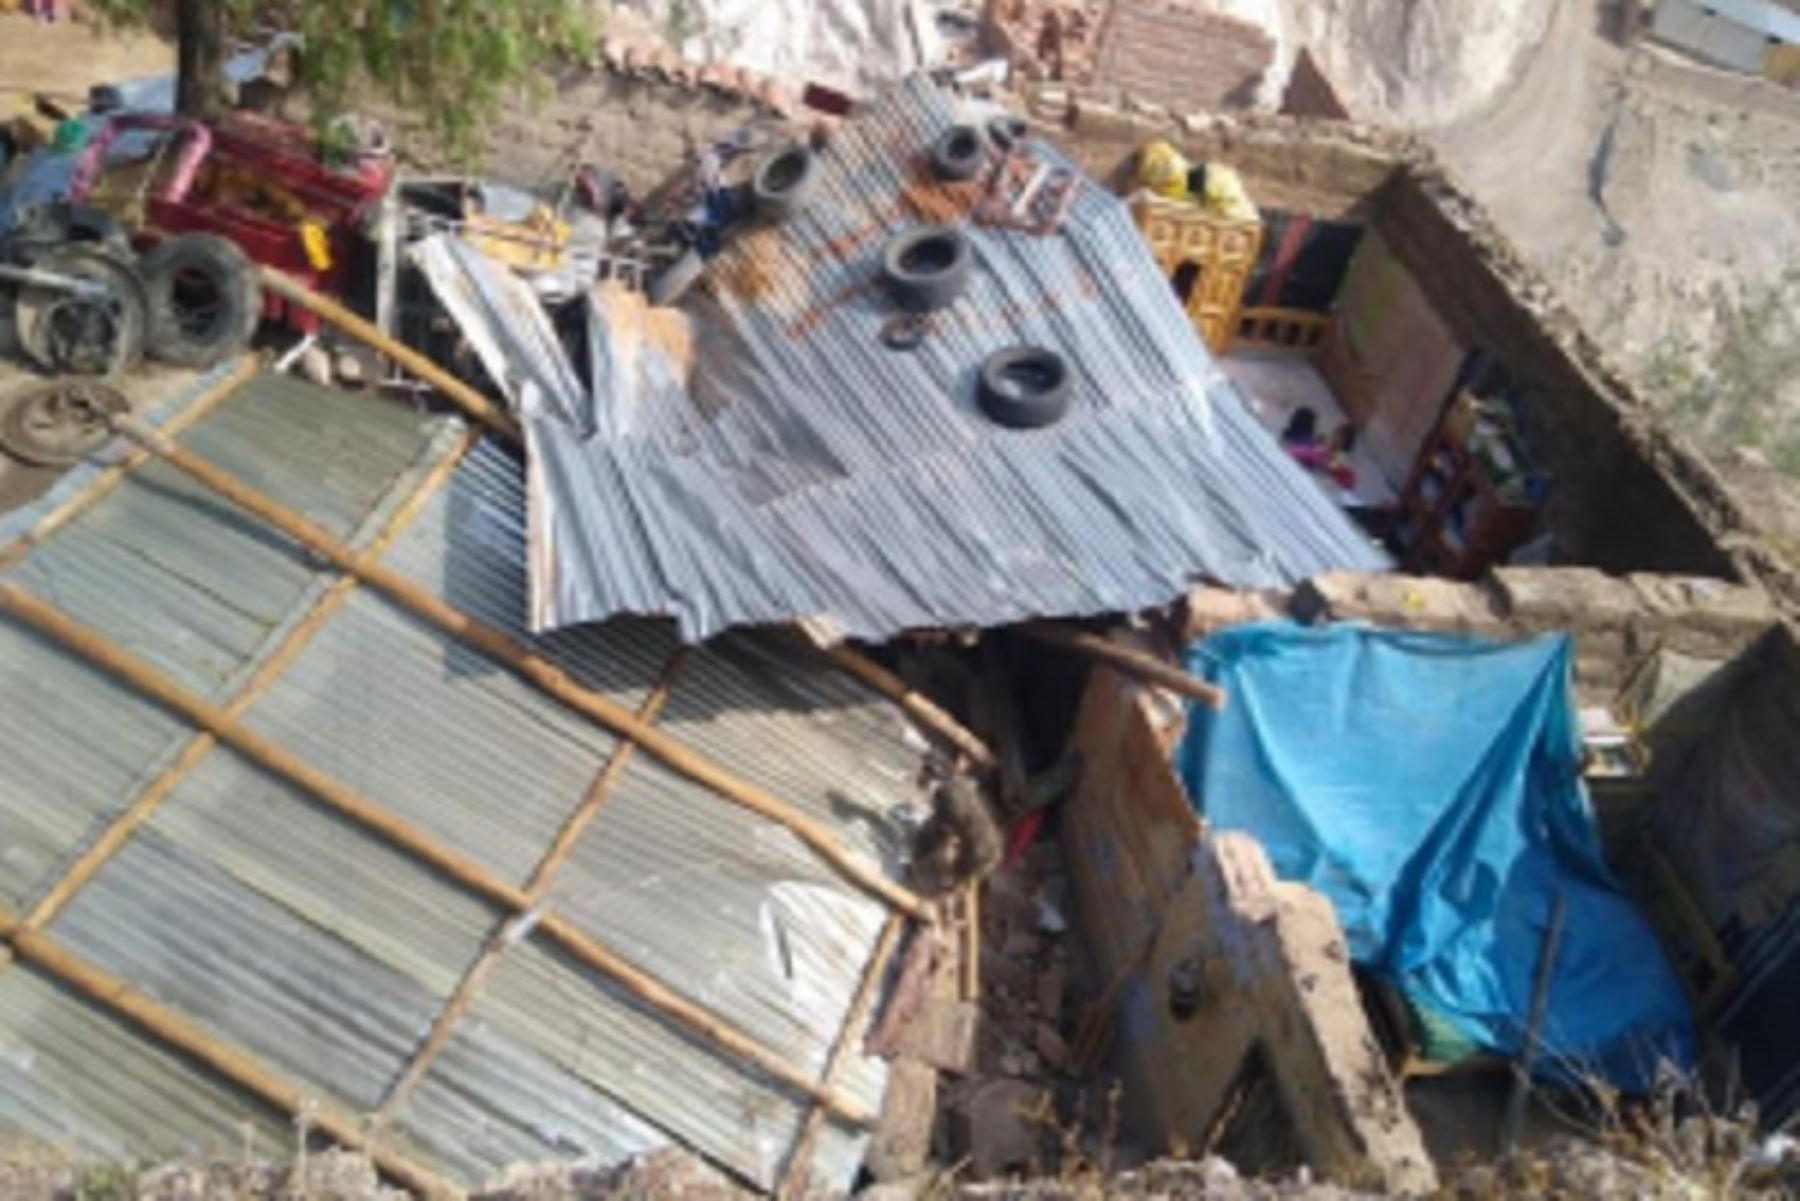 Vientos fuertes afectaron el distrito de Canayre, en Ayacucho, causando daños materiales en varias viviendas. ANDINA/Difusión